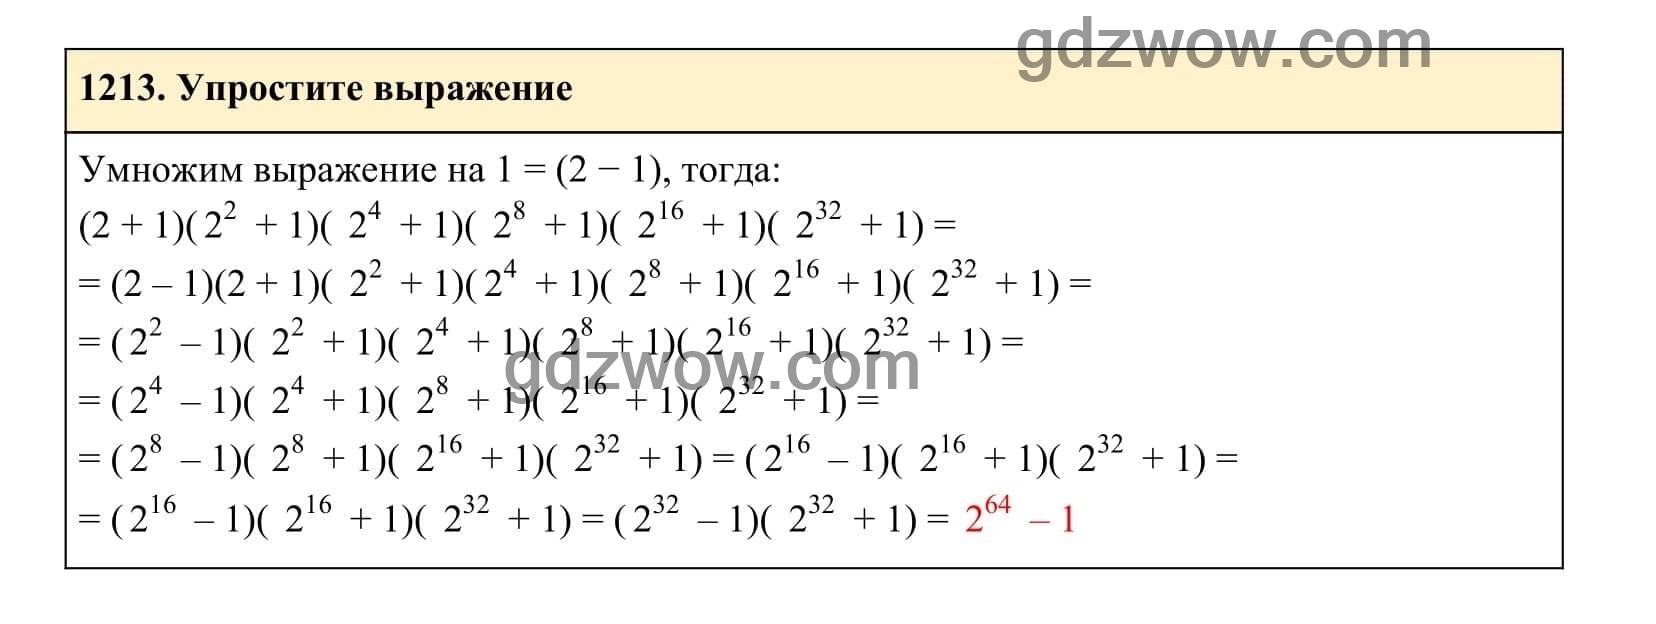 Упражнение 1213 - ГДЗ по Алгебре 7 класс Учебник Макарычев (решебник) - GDZwow